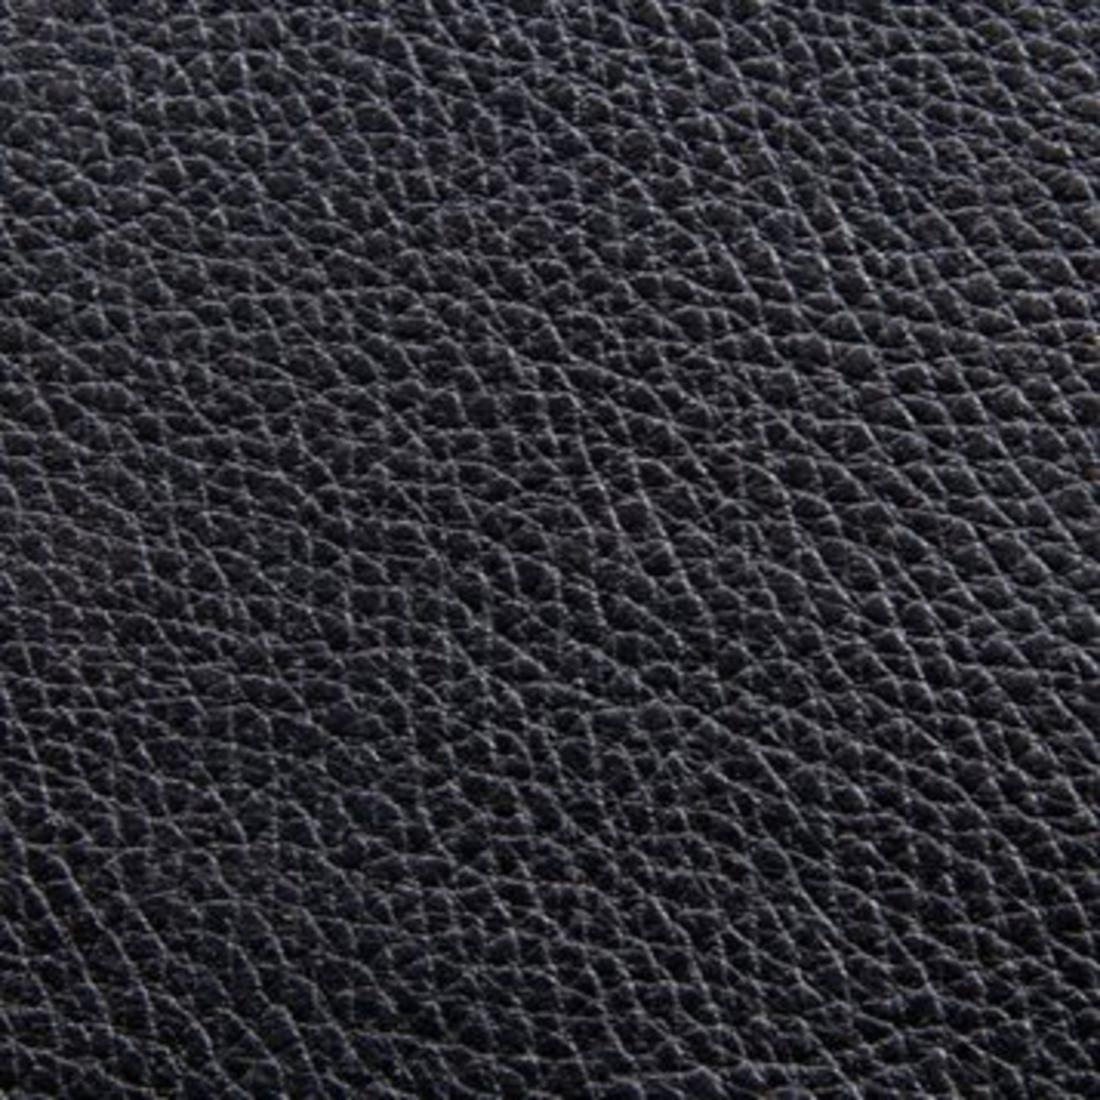 Unique Products, Inc. - Tiger Pebble Print Leather - Black